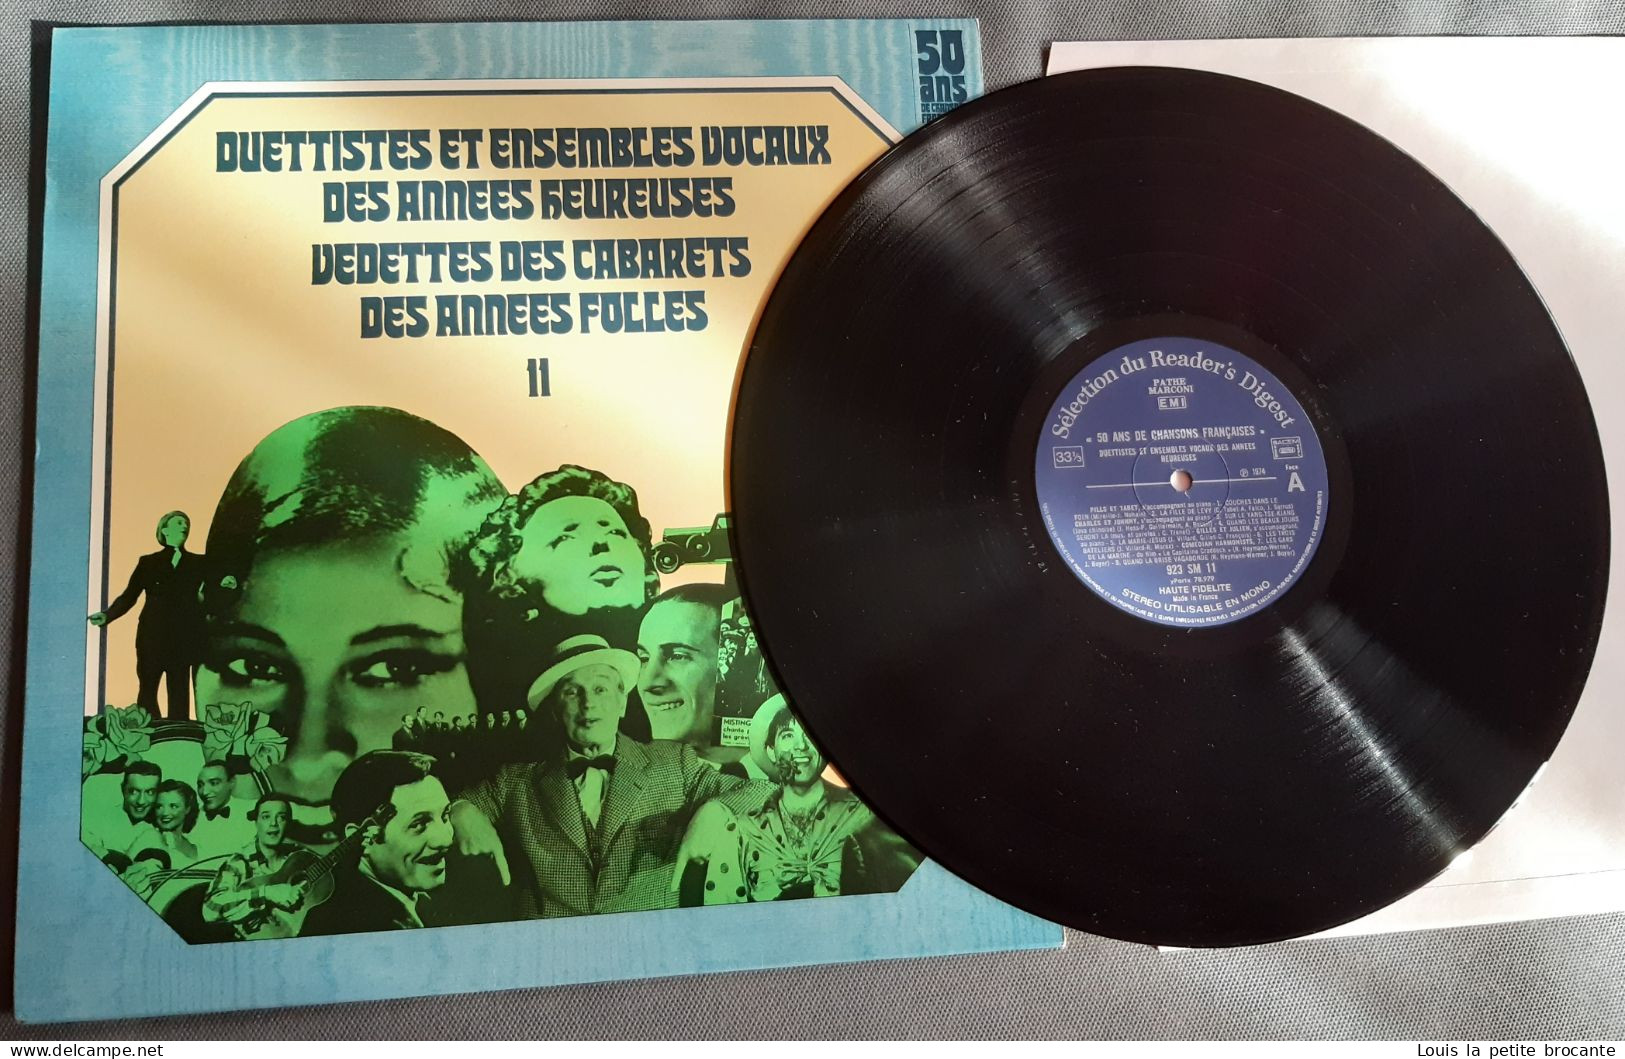 Coffret de 12 disques vinyles "50 Ans de Chansons Françaises", 33 tours stéréo. PATHE MARCONI, EMI, Sélection du Reader'